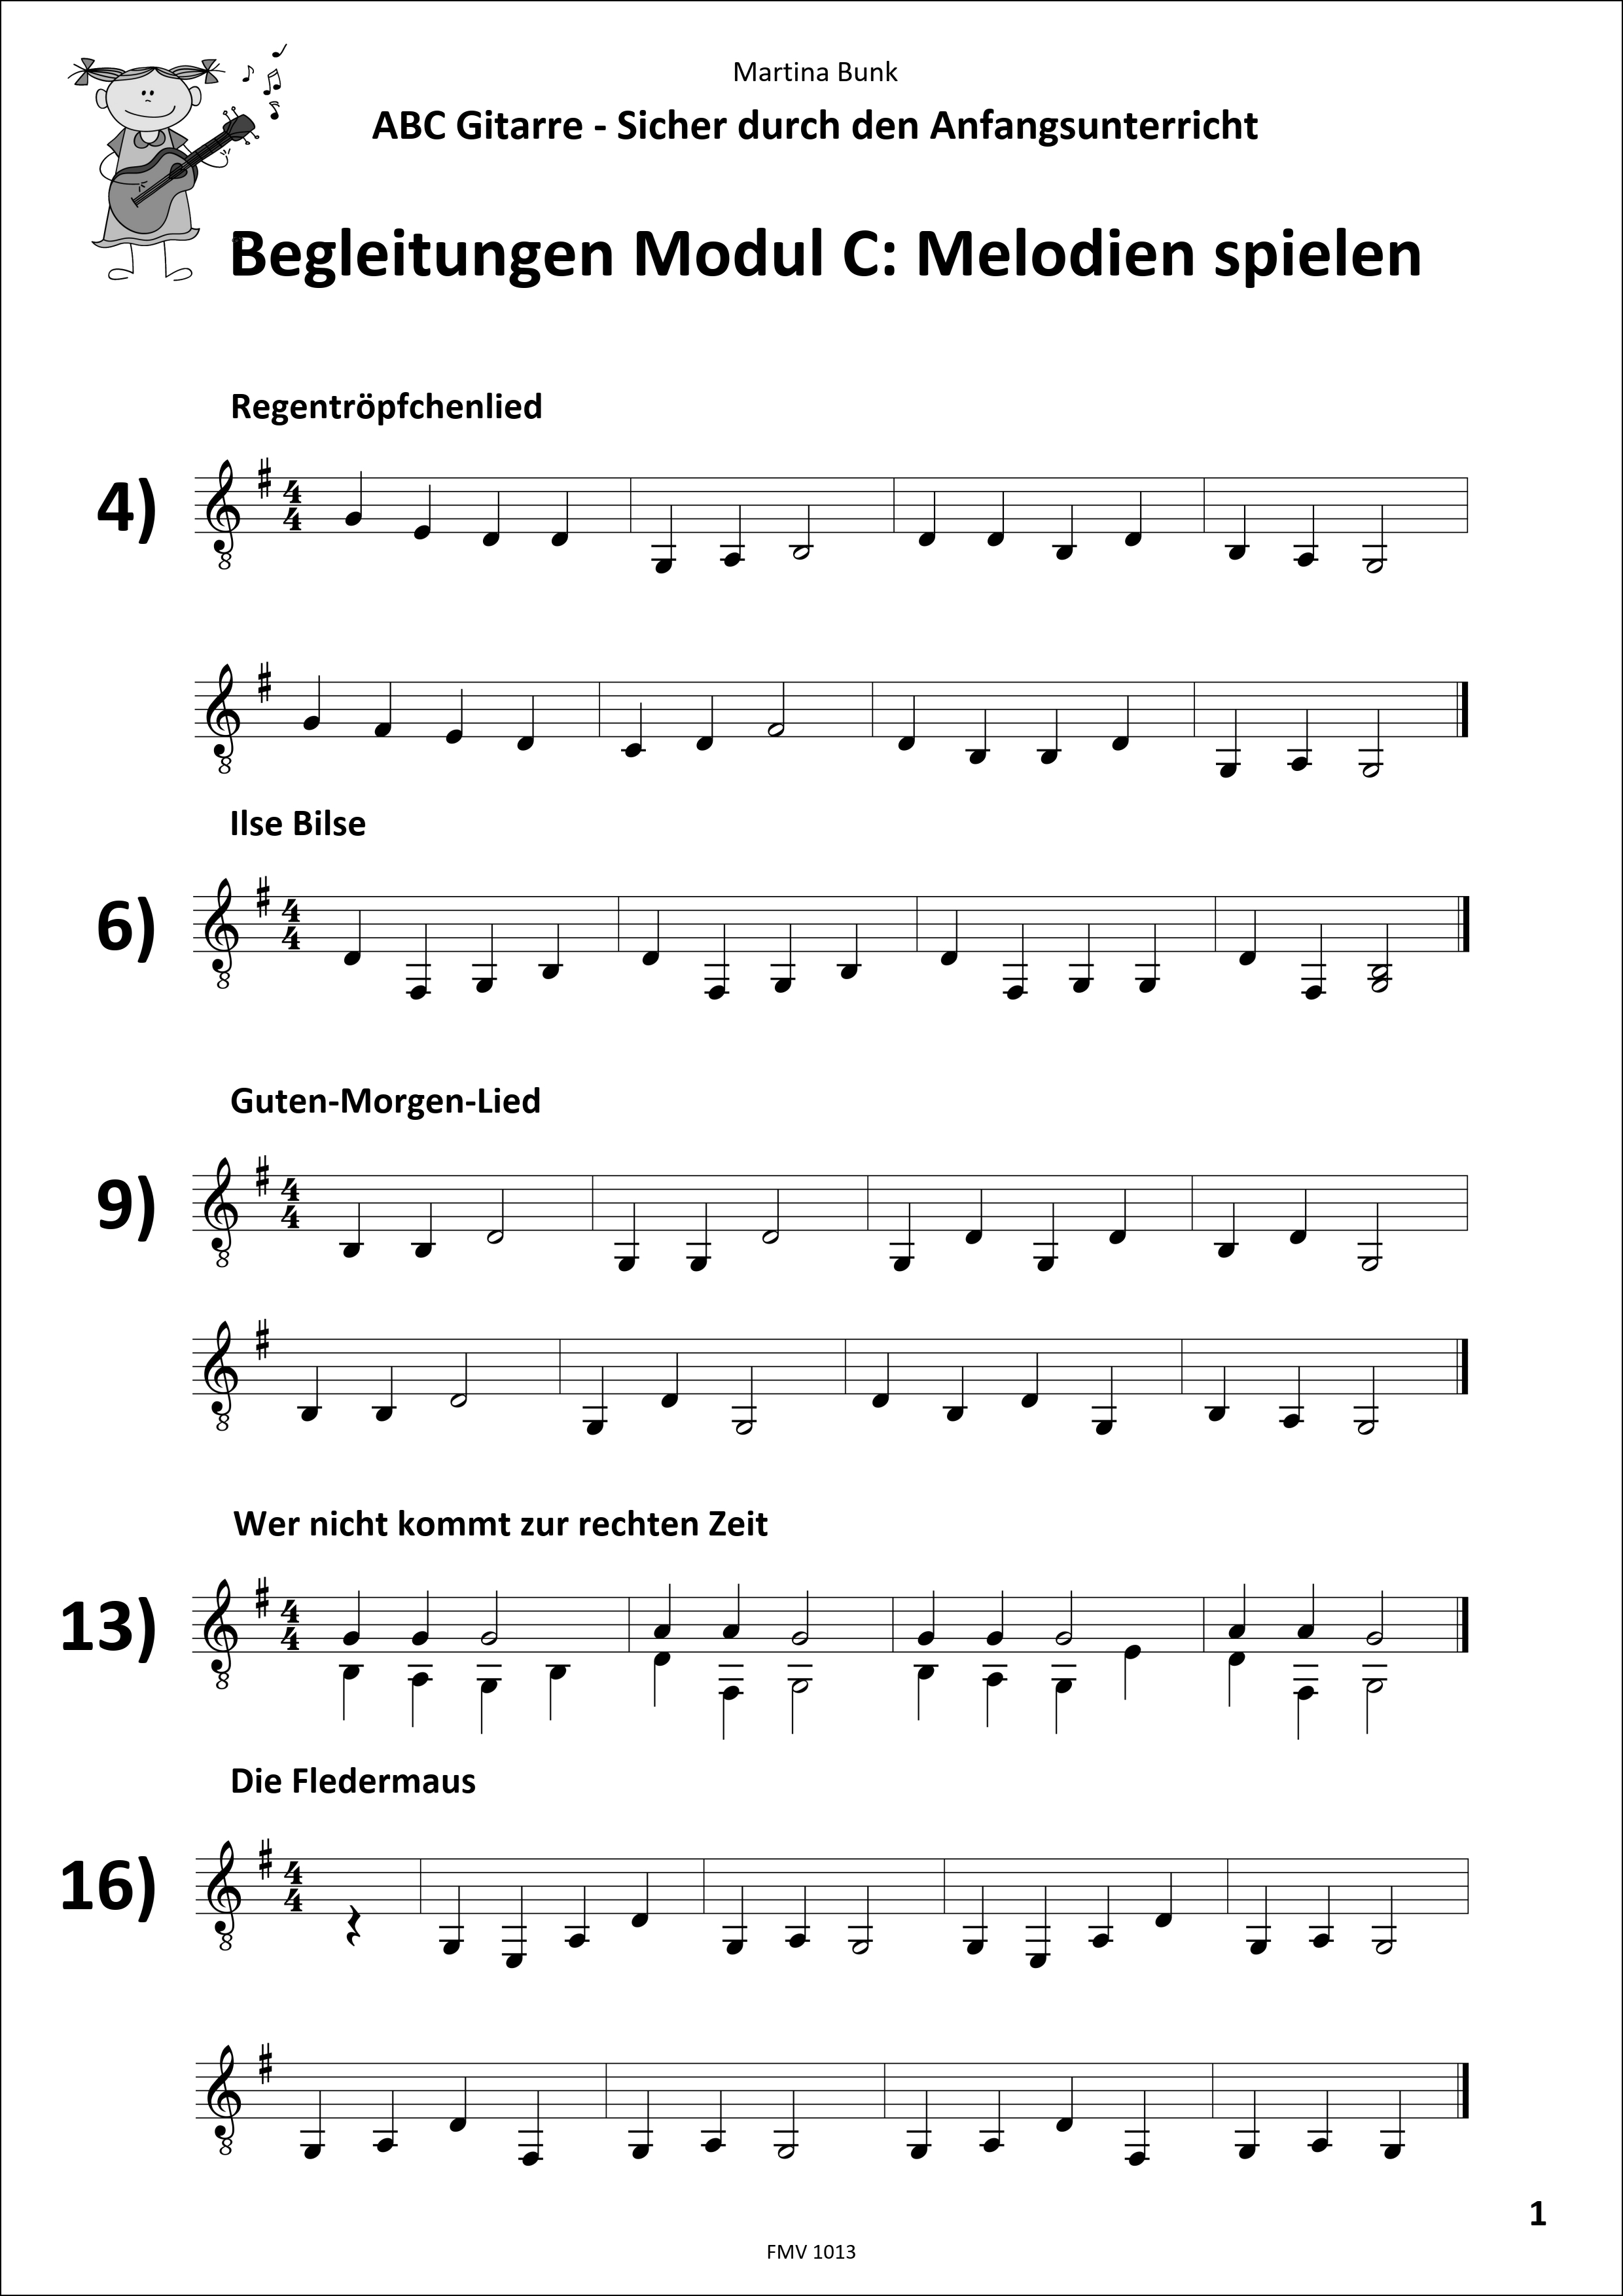 Begleitungen zu Modul C – Melodien spielen